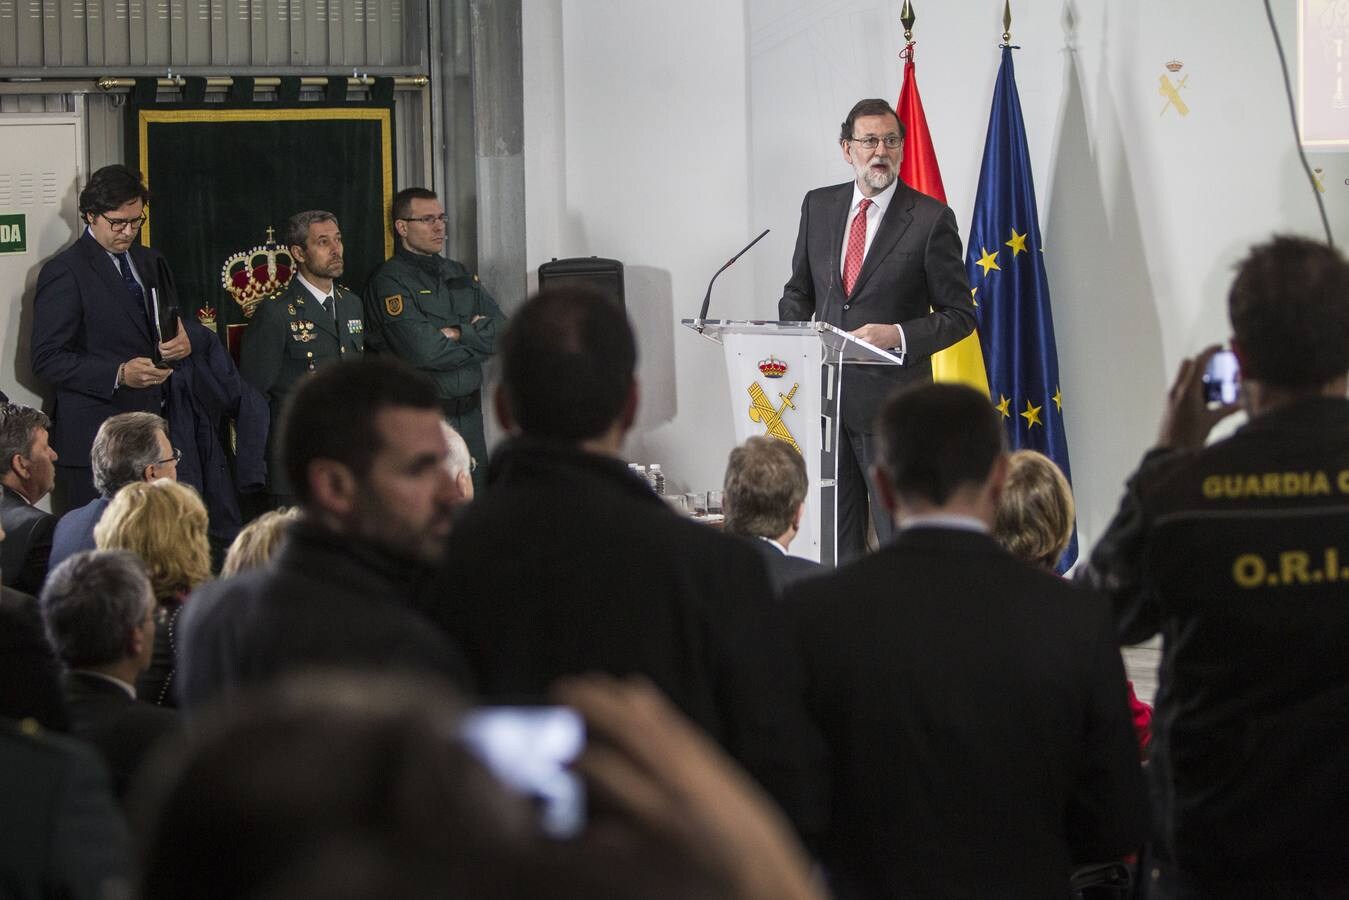 El presidente del Gobierno, Mariano Rajoy, ha presenciado un simulacro de una operación antiyihadista en el Polígono de Experiencias para Fuerzas Especiales de la Guardia Civil (PEFE), en Logroño, que ha inaugurado oficialmente junto al ministro de Interior, Juan Ignacio Zoido.